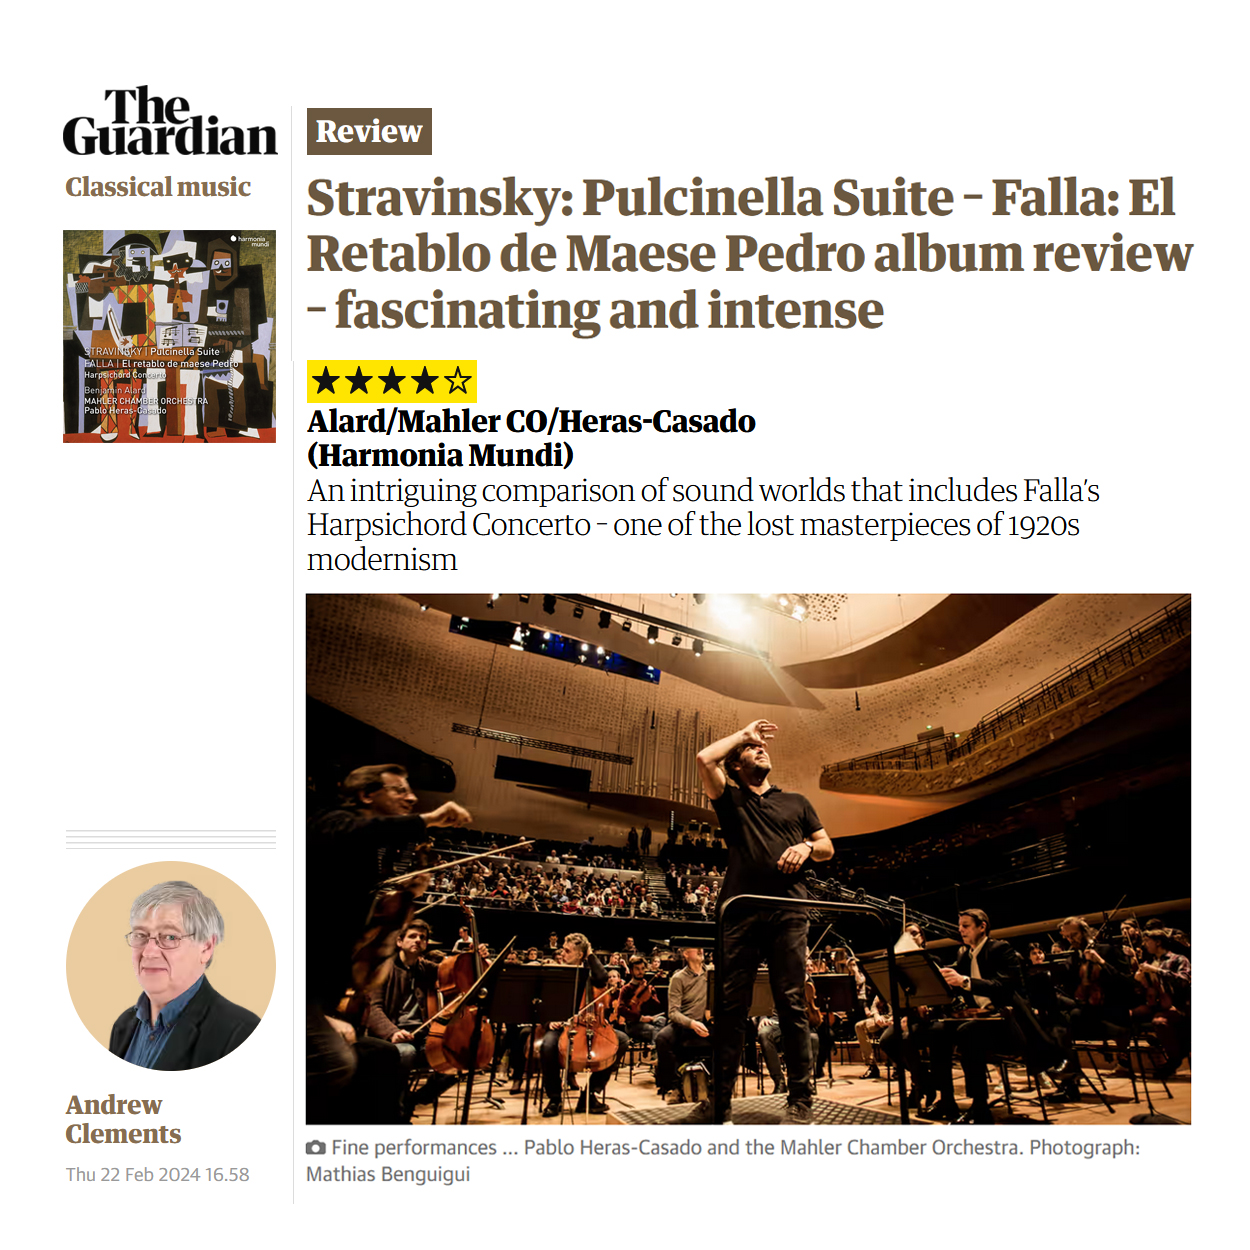 Stravinsky: Pulcinella Suite – Falla: El Retablo de Maese Pedro album review – fascinating and intense